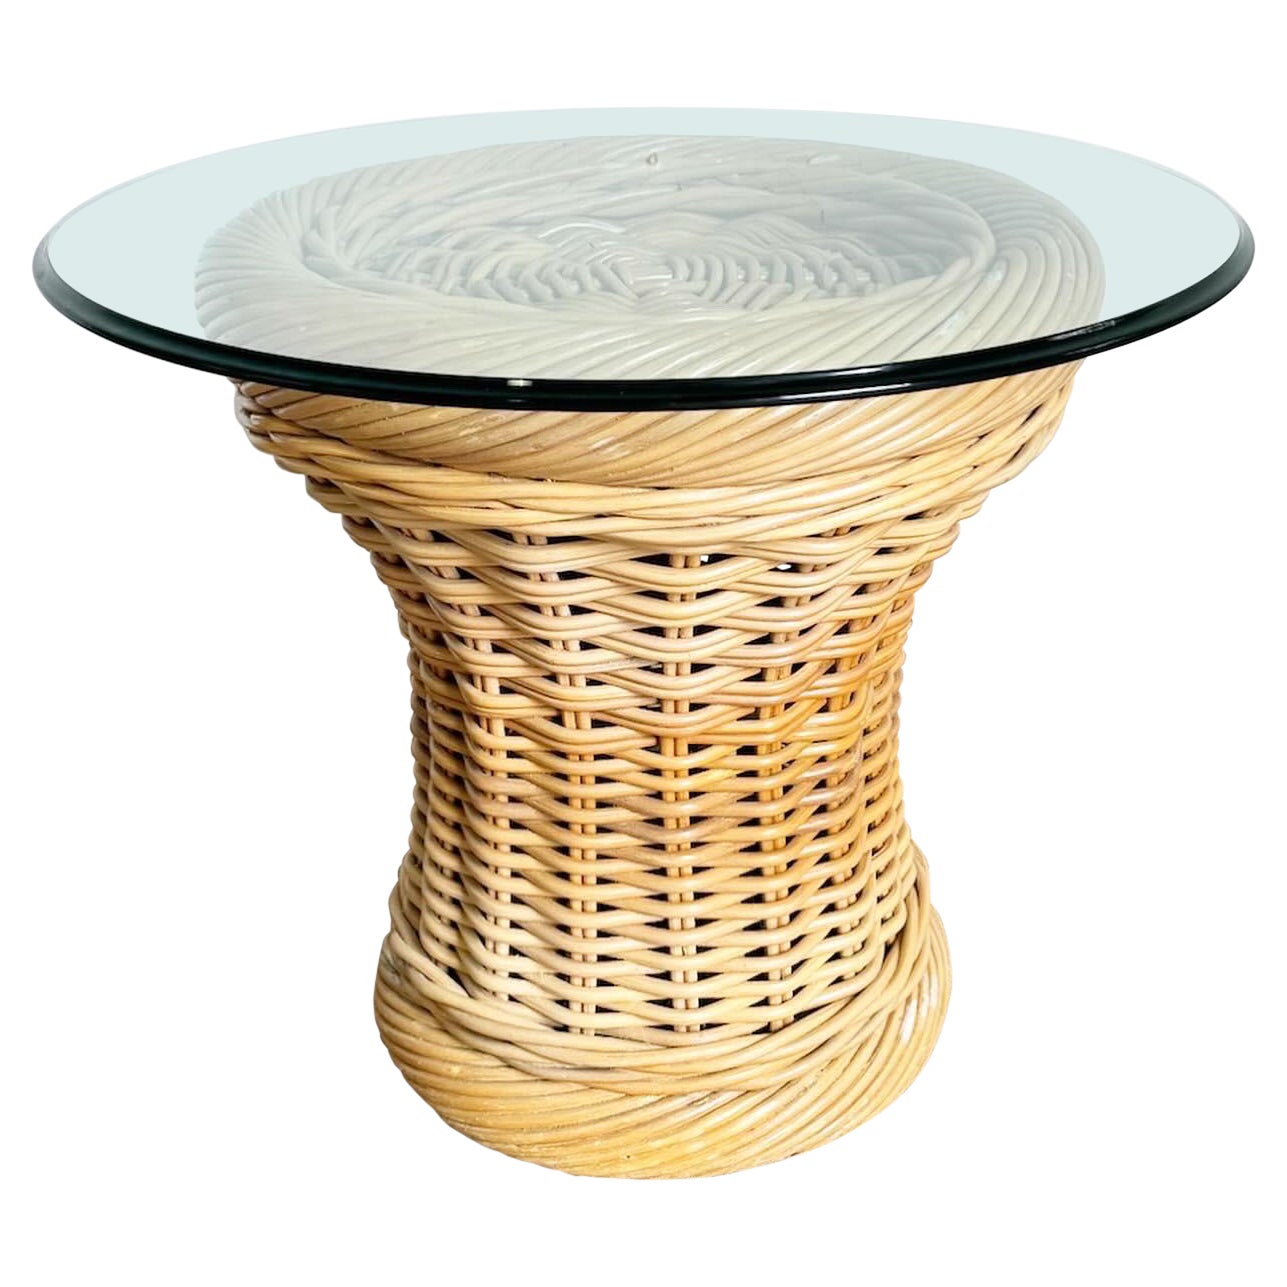 Table d'appoint Boho Chic en Bambou Pencil Reed en osier avec plateau en verre